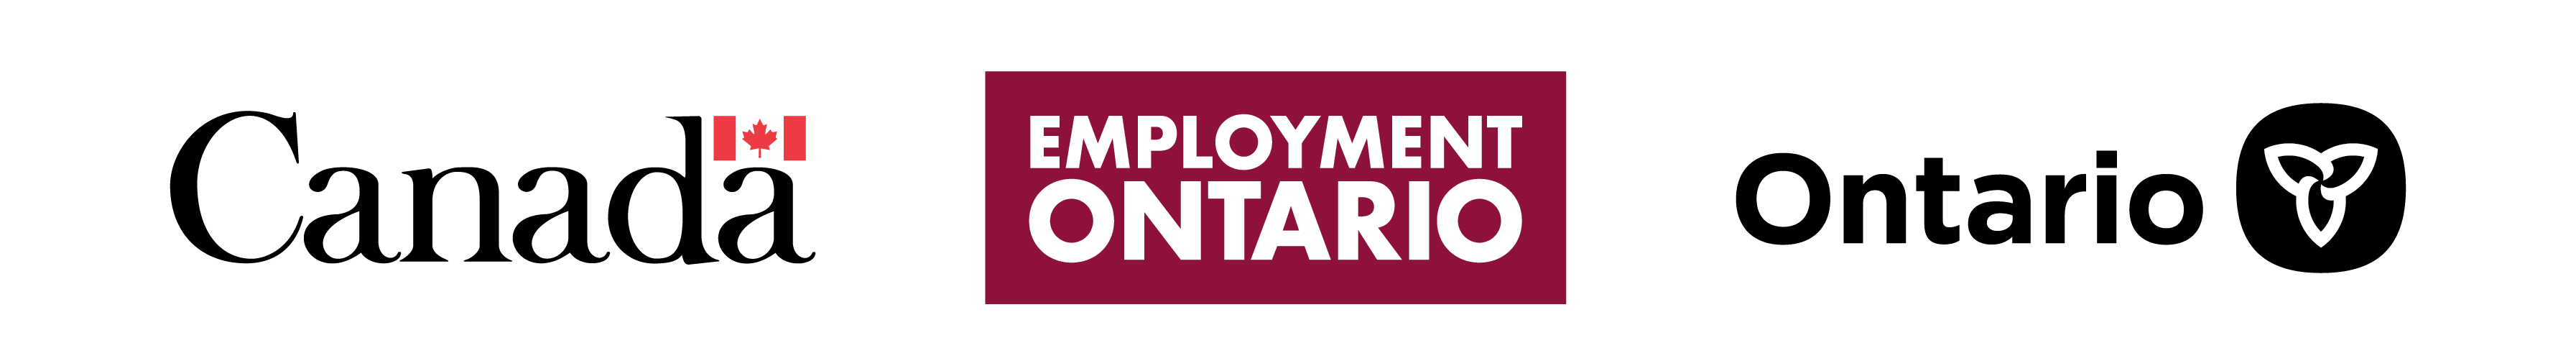 Employment Ontario tri logo